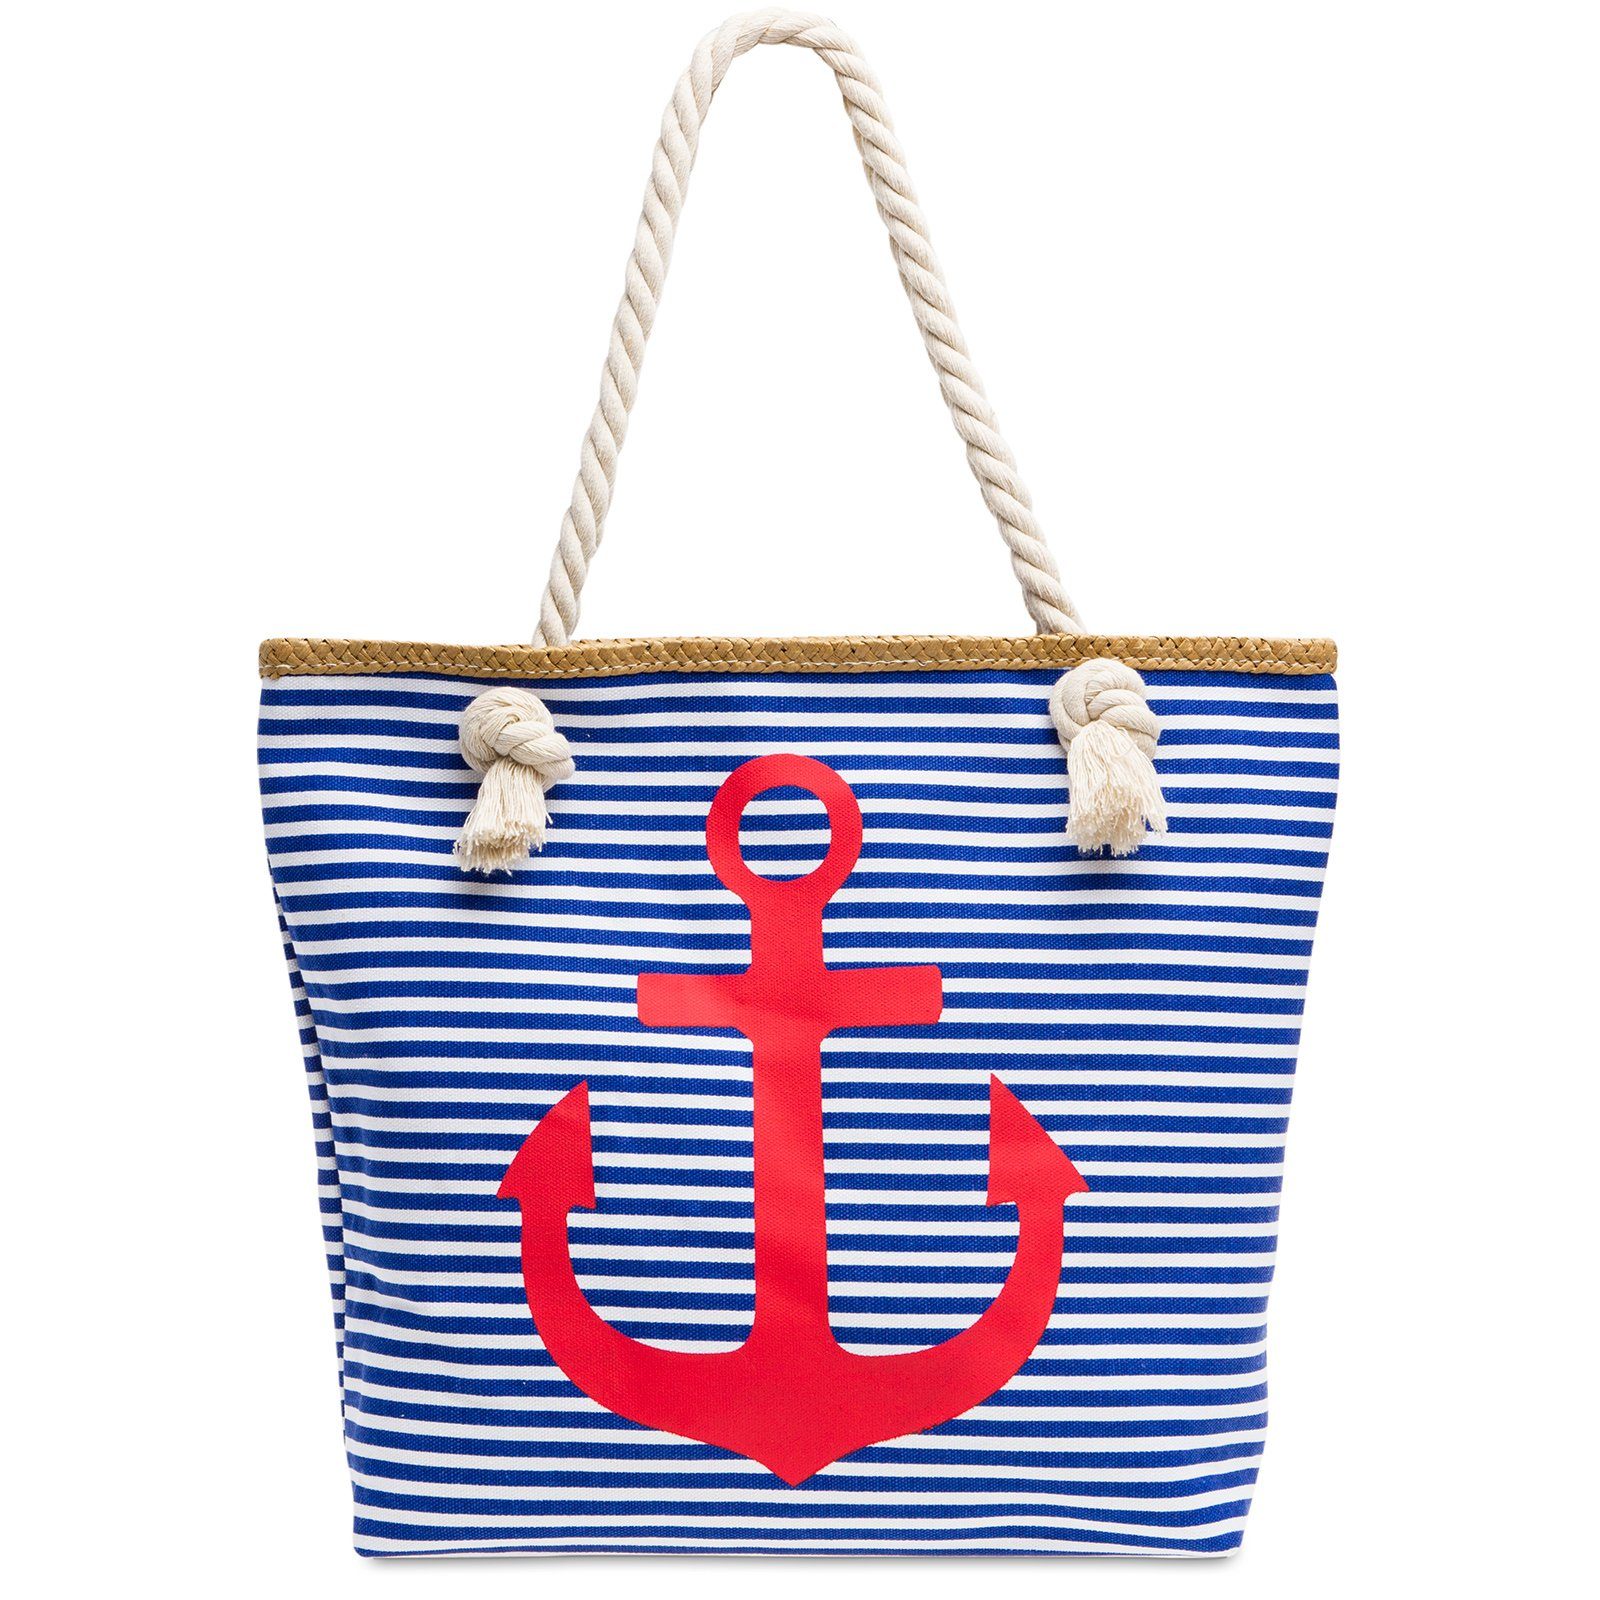 Caspar Strandtasche TS1040 Damen Strandtasche / Shopper mit Reißverschluss und maritimen Streifen ANKER Muster blau - rot